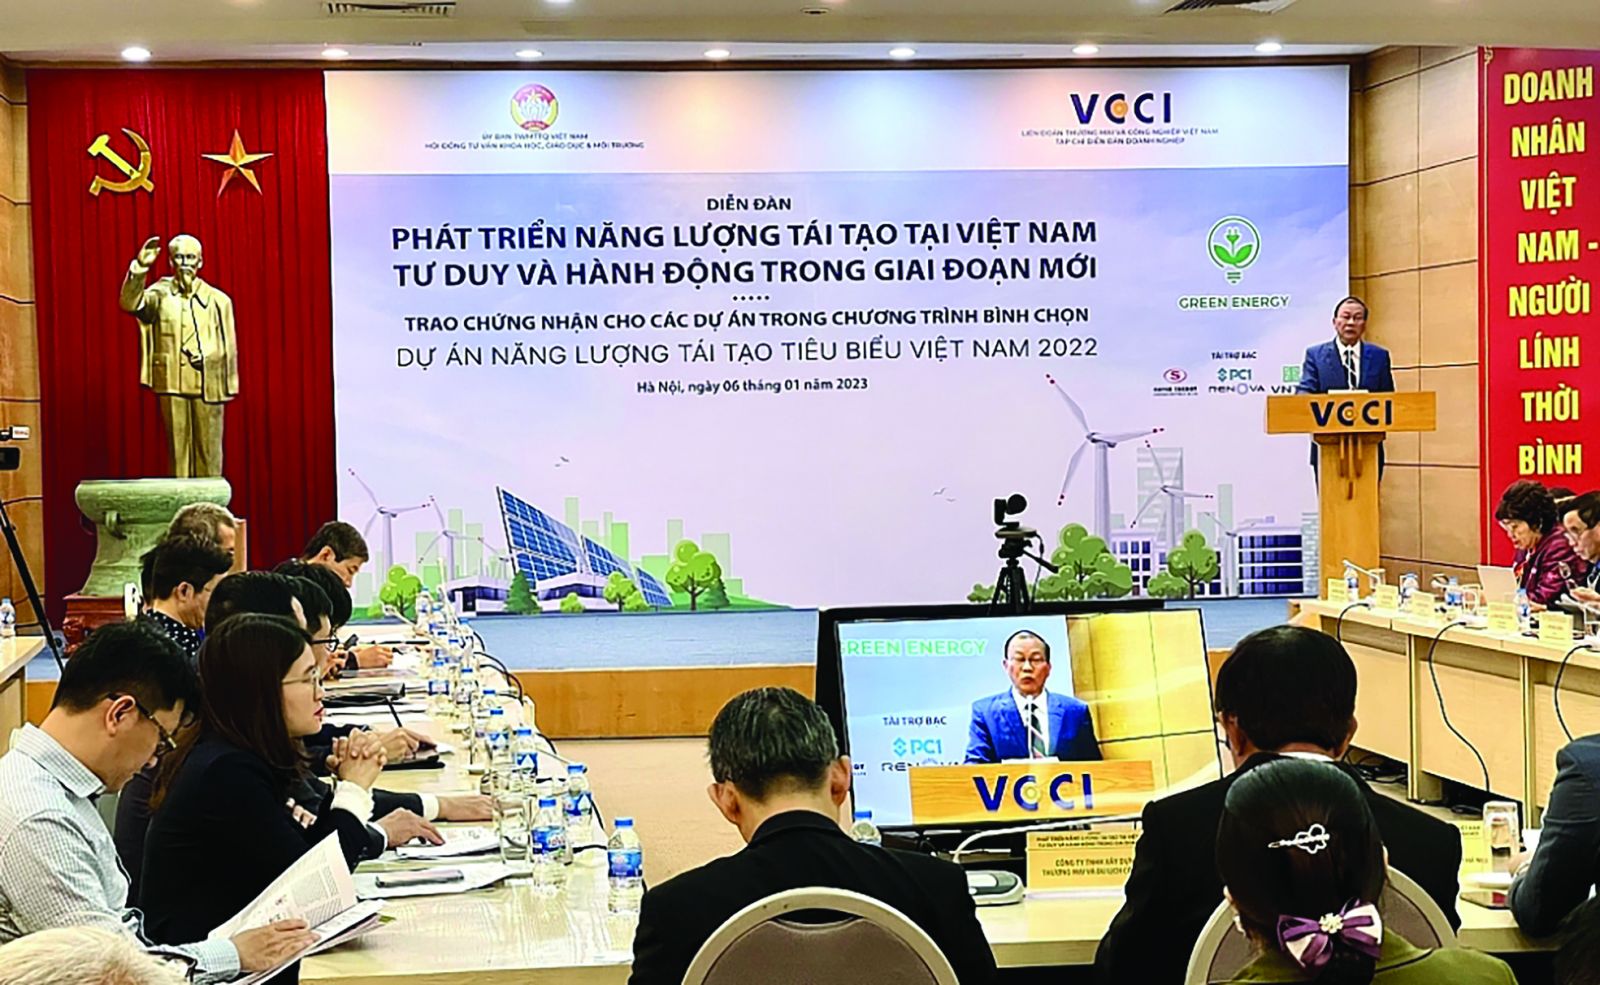 p/Diễn đàn “Phát triển năng lượng tái tạo tại Việt Nam: Tư duy và hành động trong giai đoạn mới” do Tạp chí Diễn đàn Doanh nghiệp tổ chức dưới sự chỉ đạo của VCCI và Ủy ban Trung ương Mặt trận Tổ quốc Việt Nam.